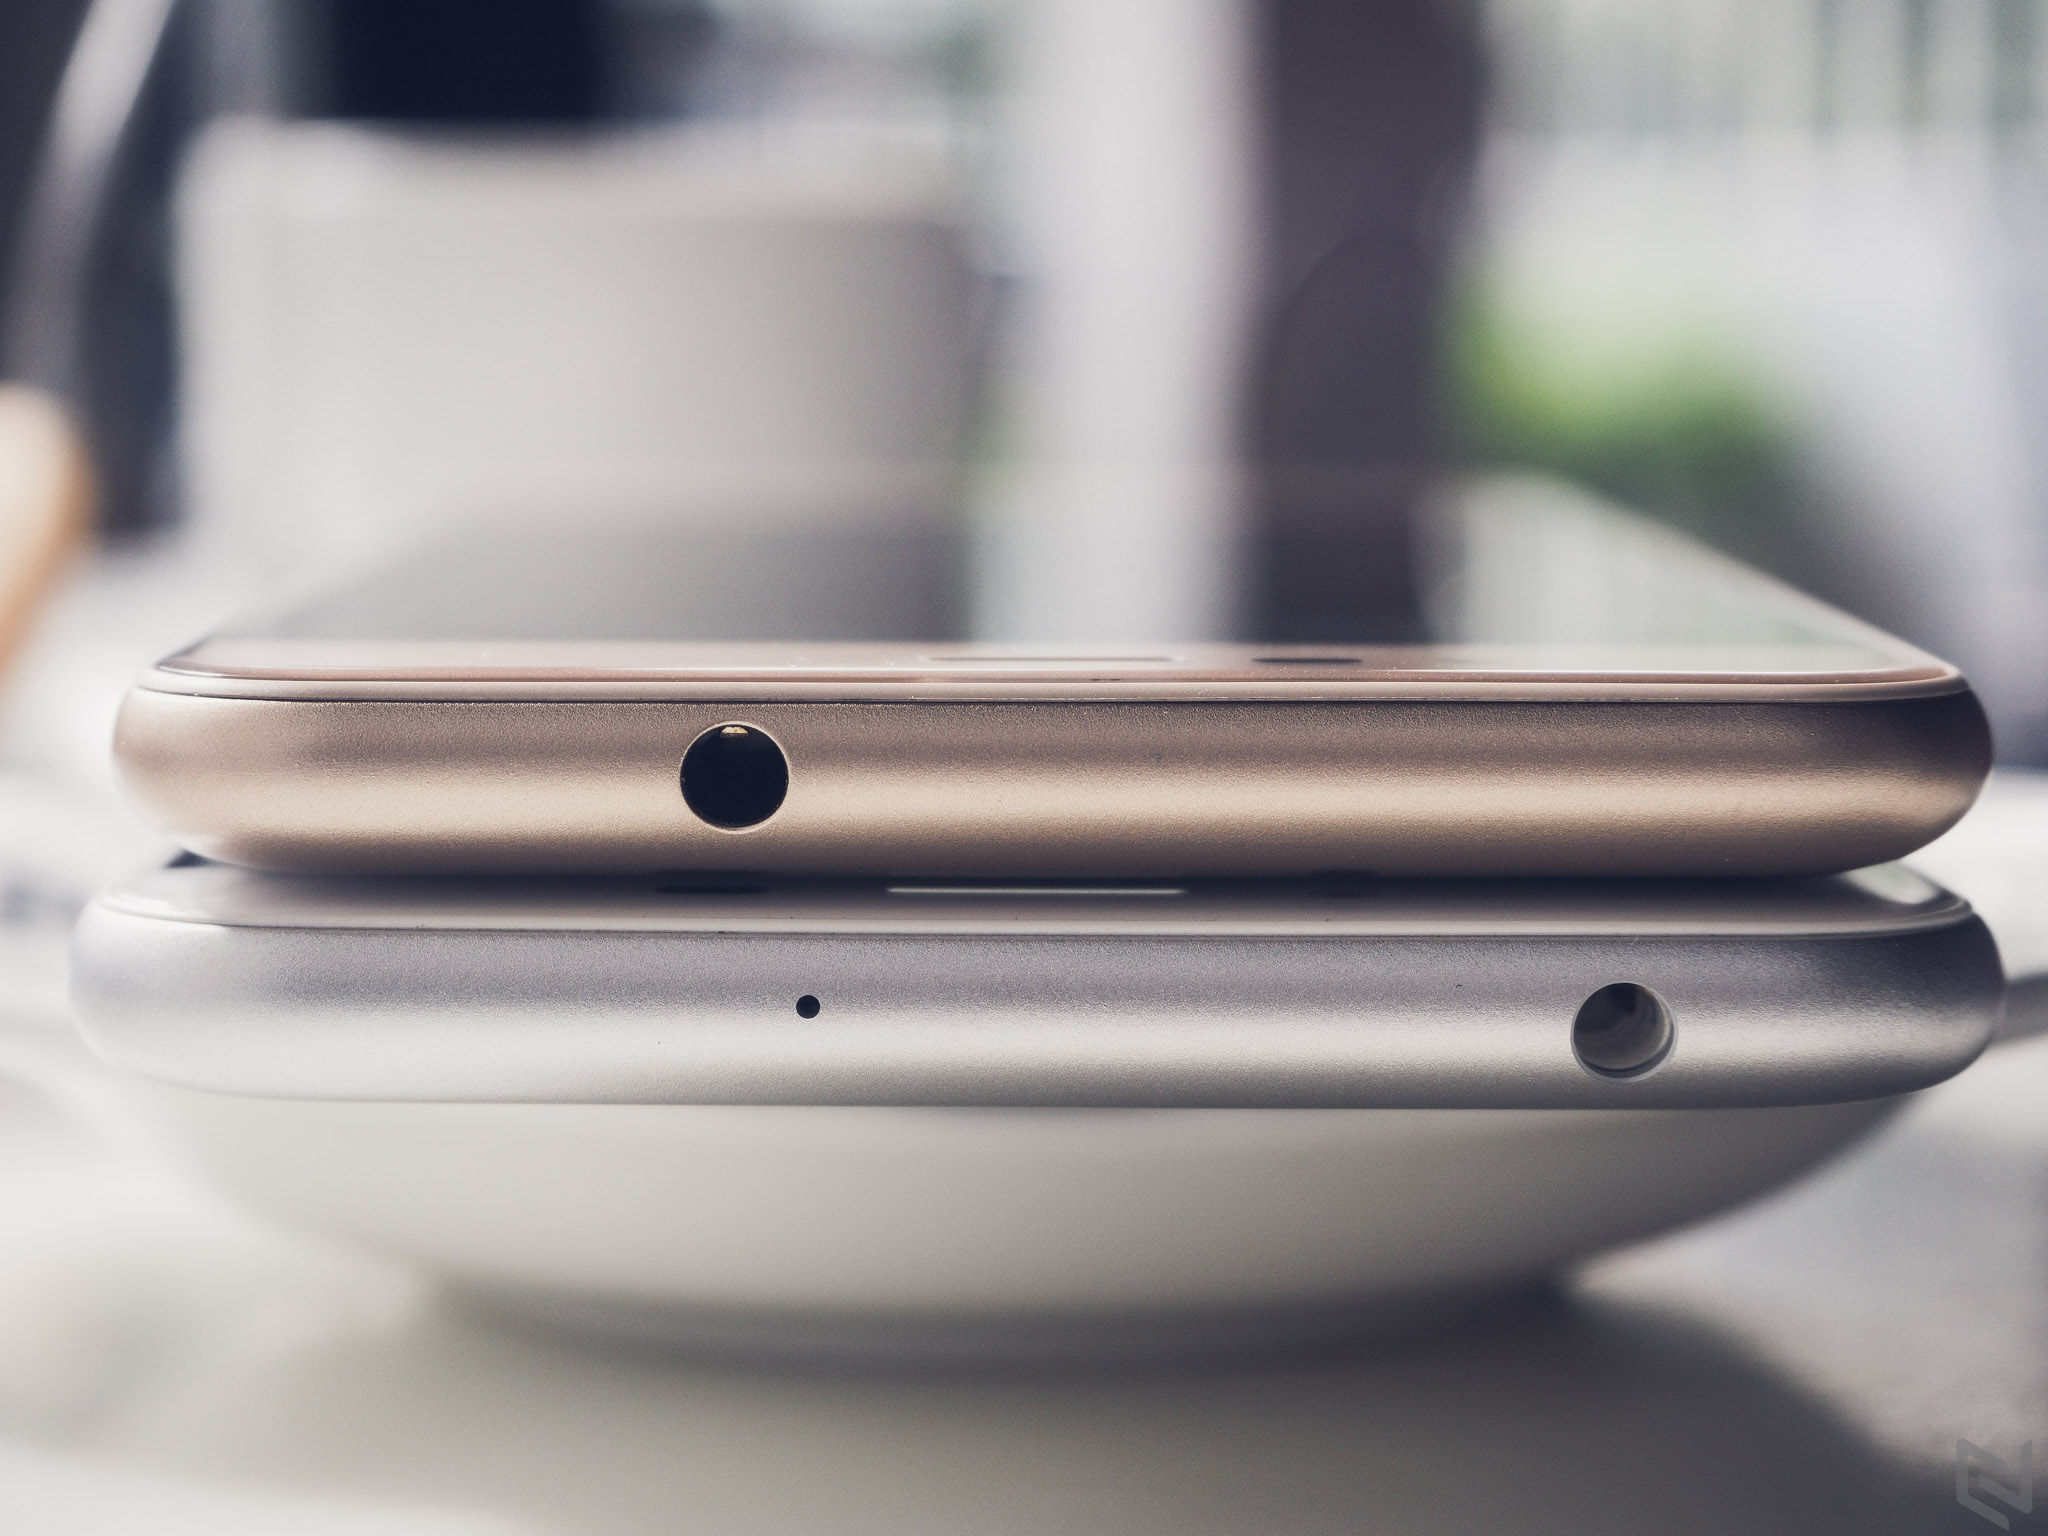 [Hình ảnh] So sánh ZenFone 3 Max 5.5" và 5.2" : Liệu có đáng để nâng cấp?